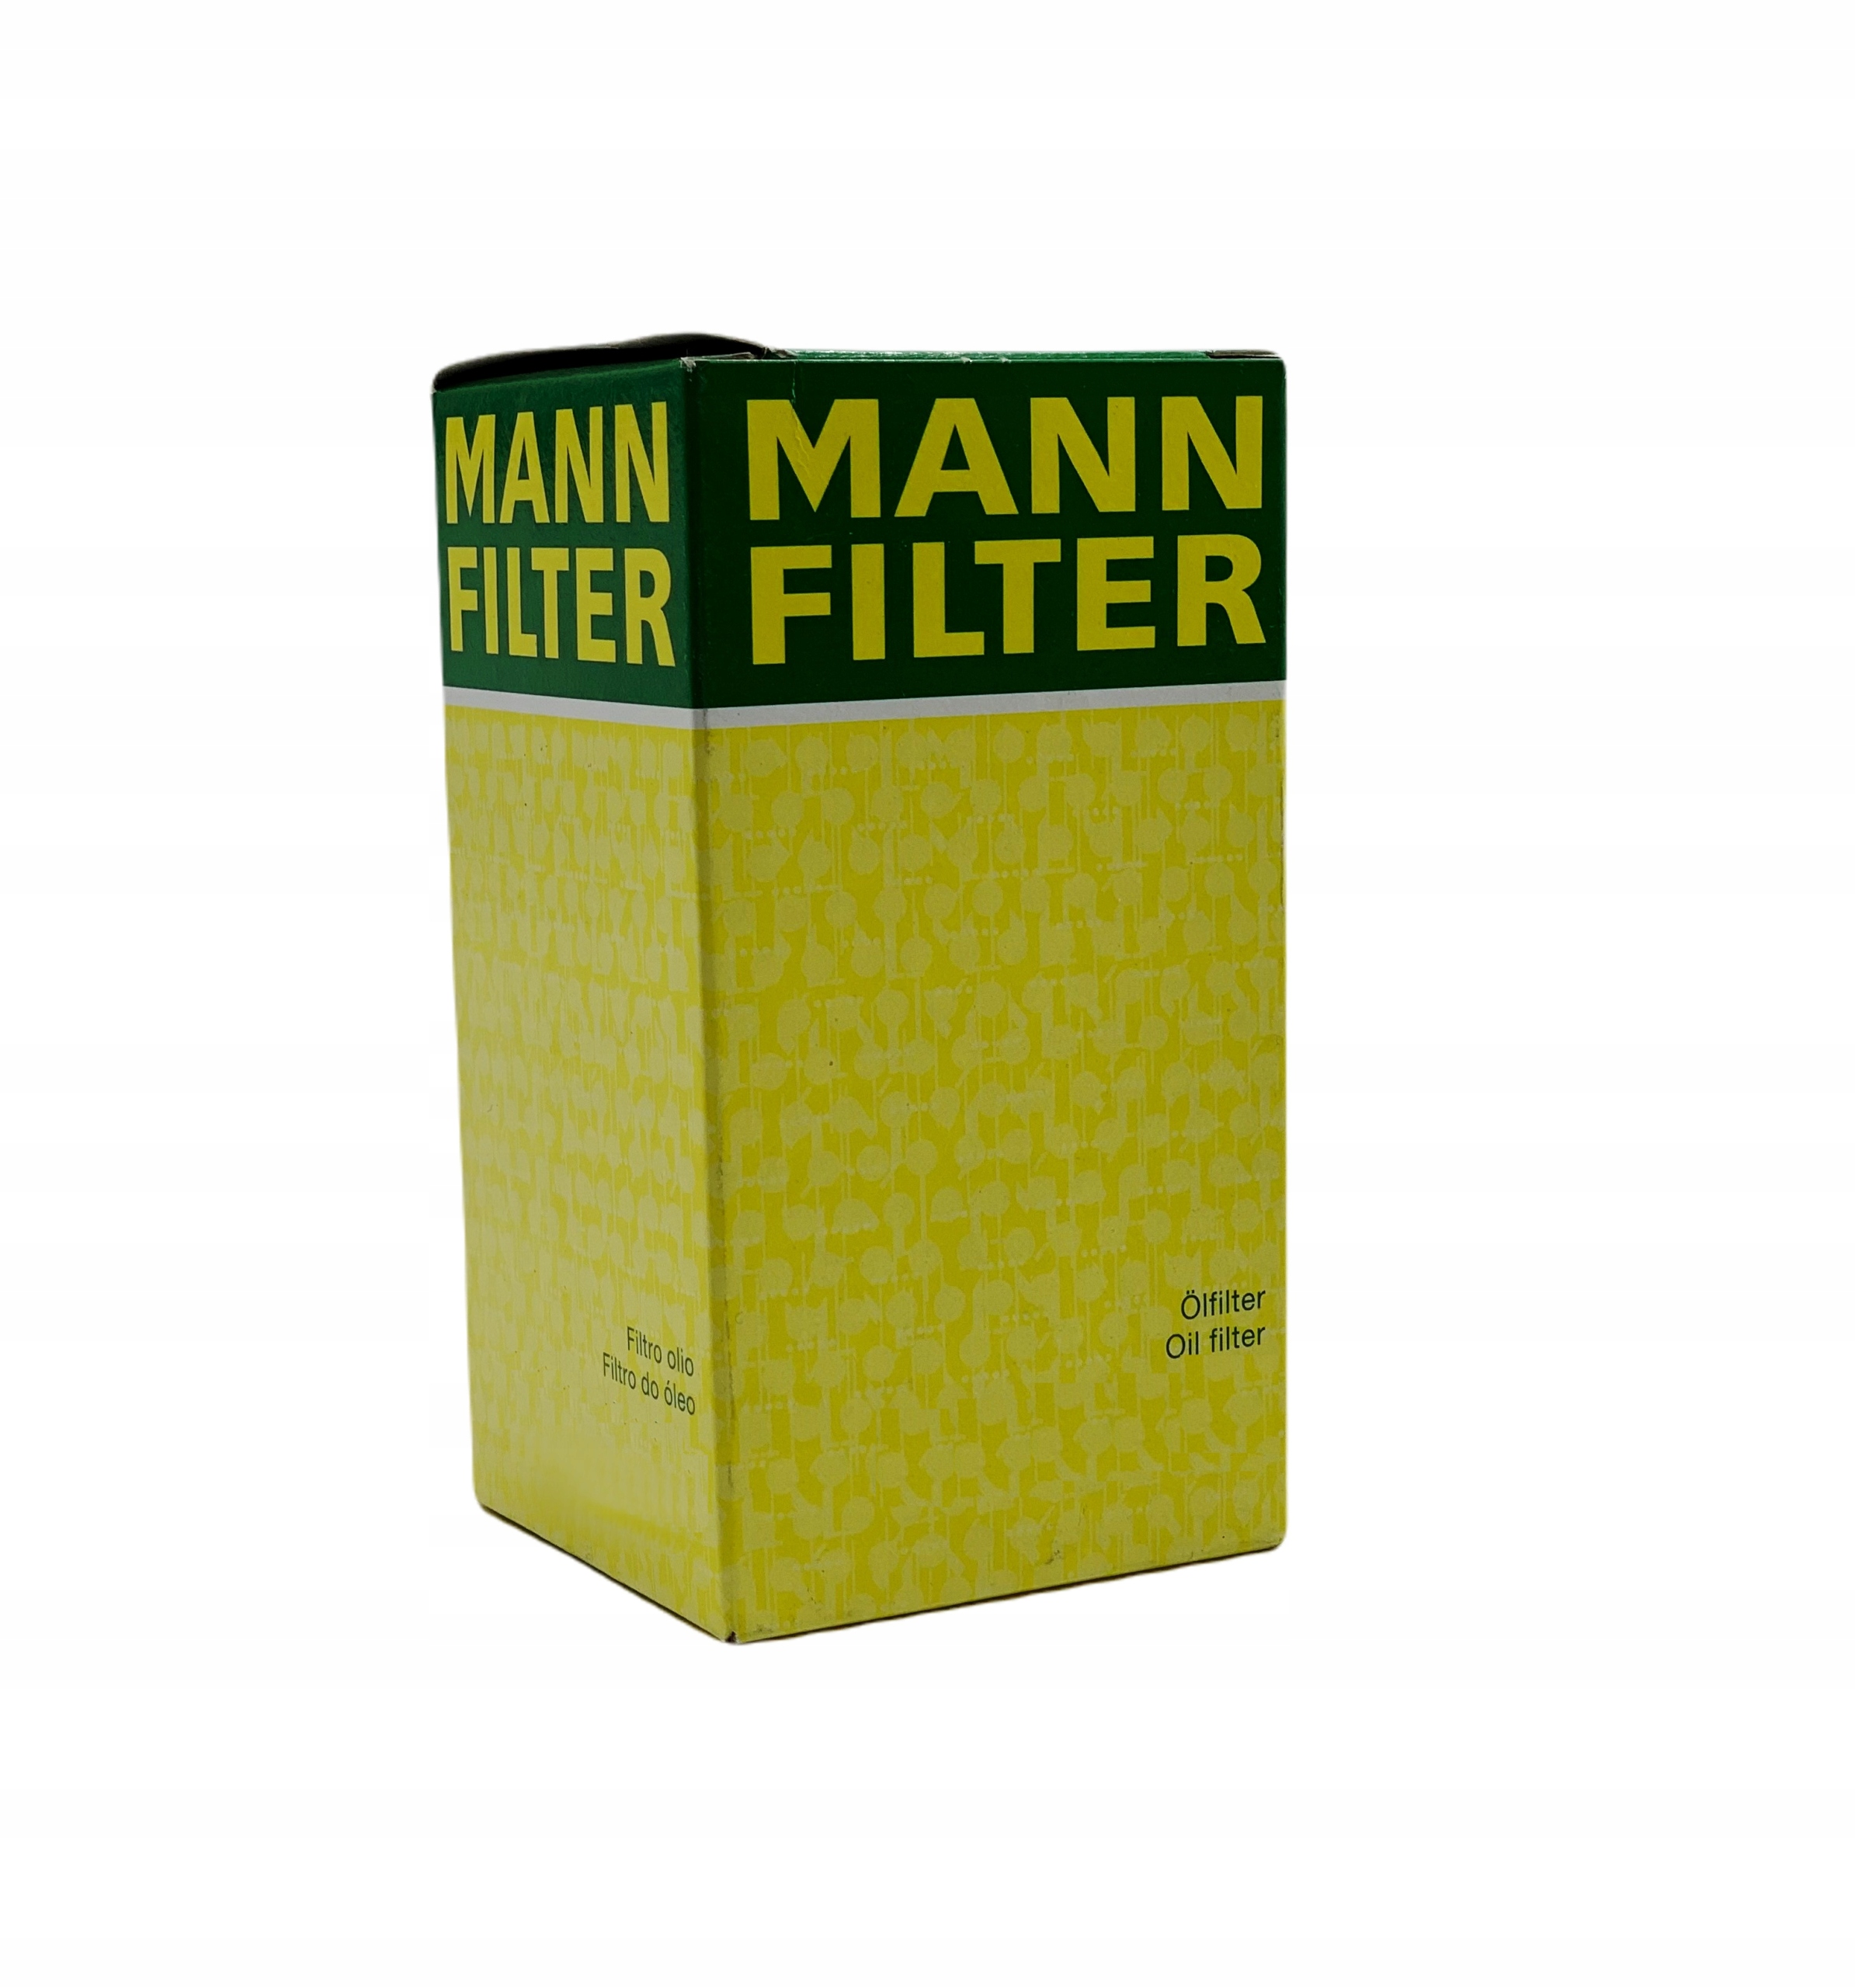 MANN-FILTER Ölfilter, W 67/1 W671 MANN-FILTER